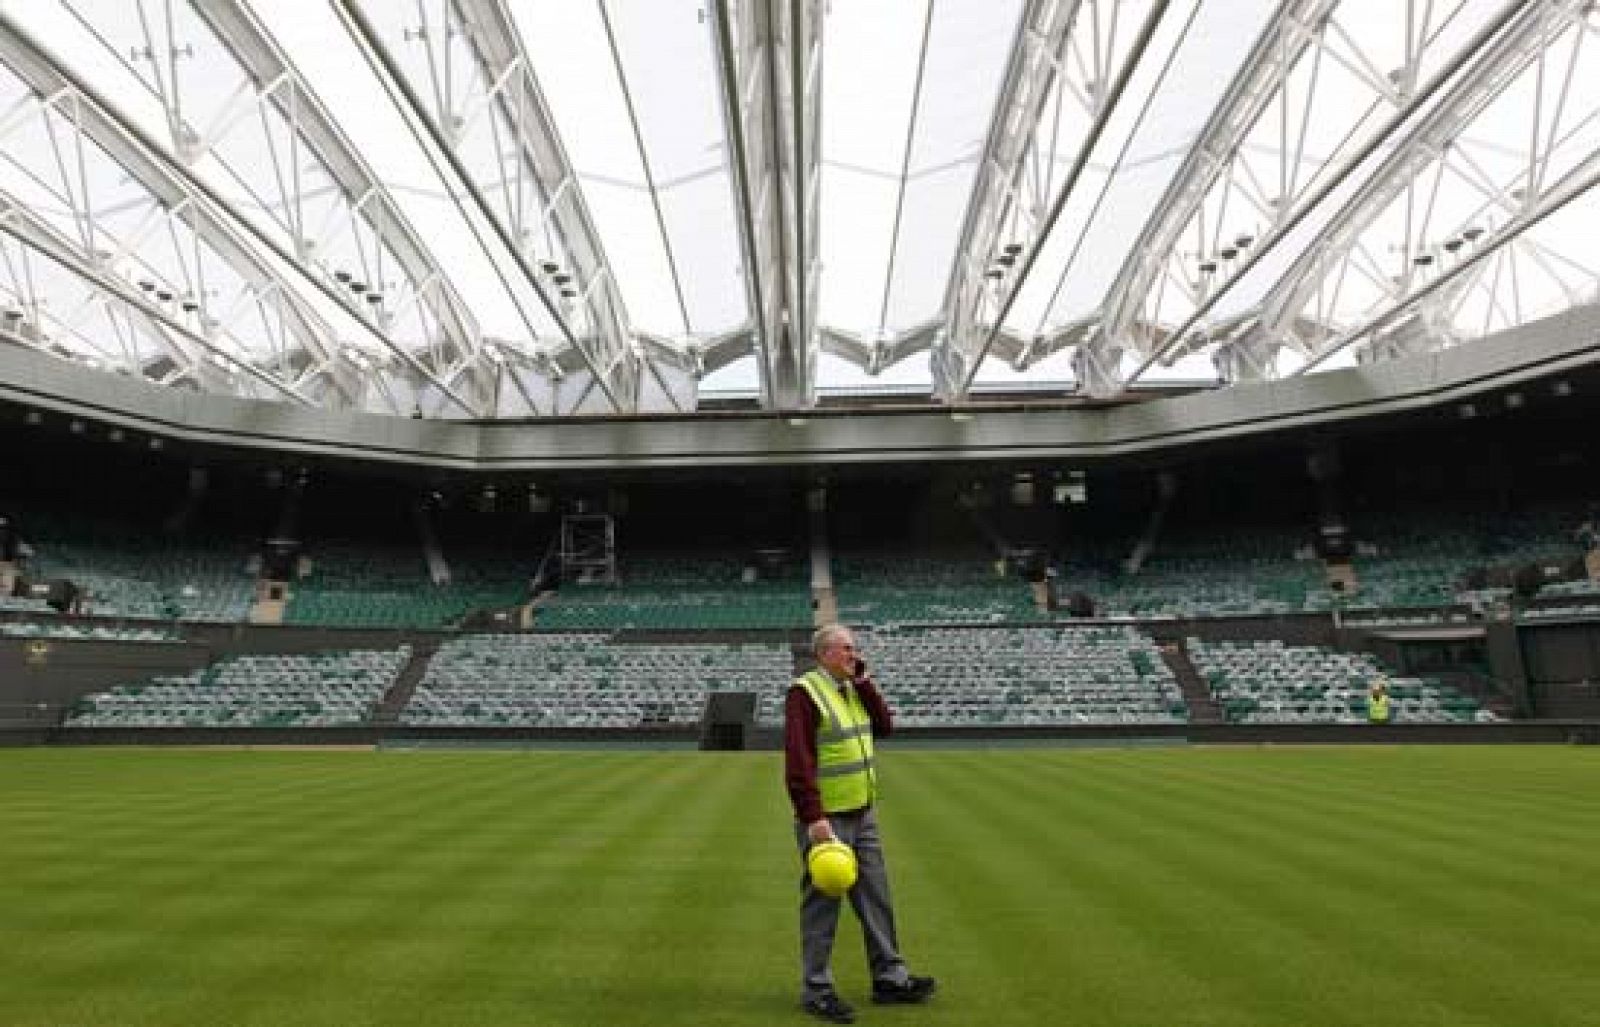 El torneo de Wimbledon, tercer 'Grand Slam' del año y que se disputa del 22 de junio al 5 de julio, ha presentado el nuevo techo retráctil.